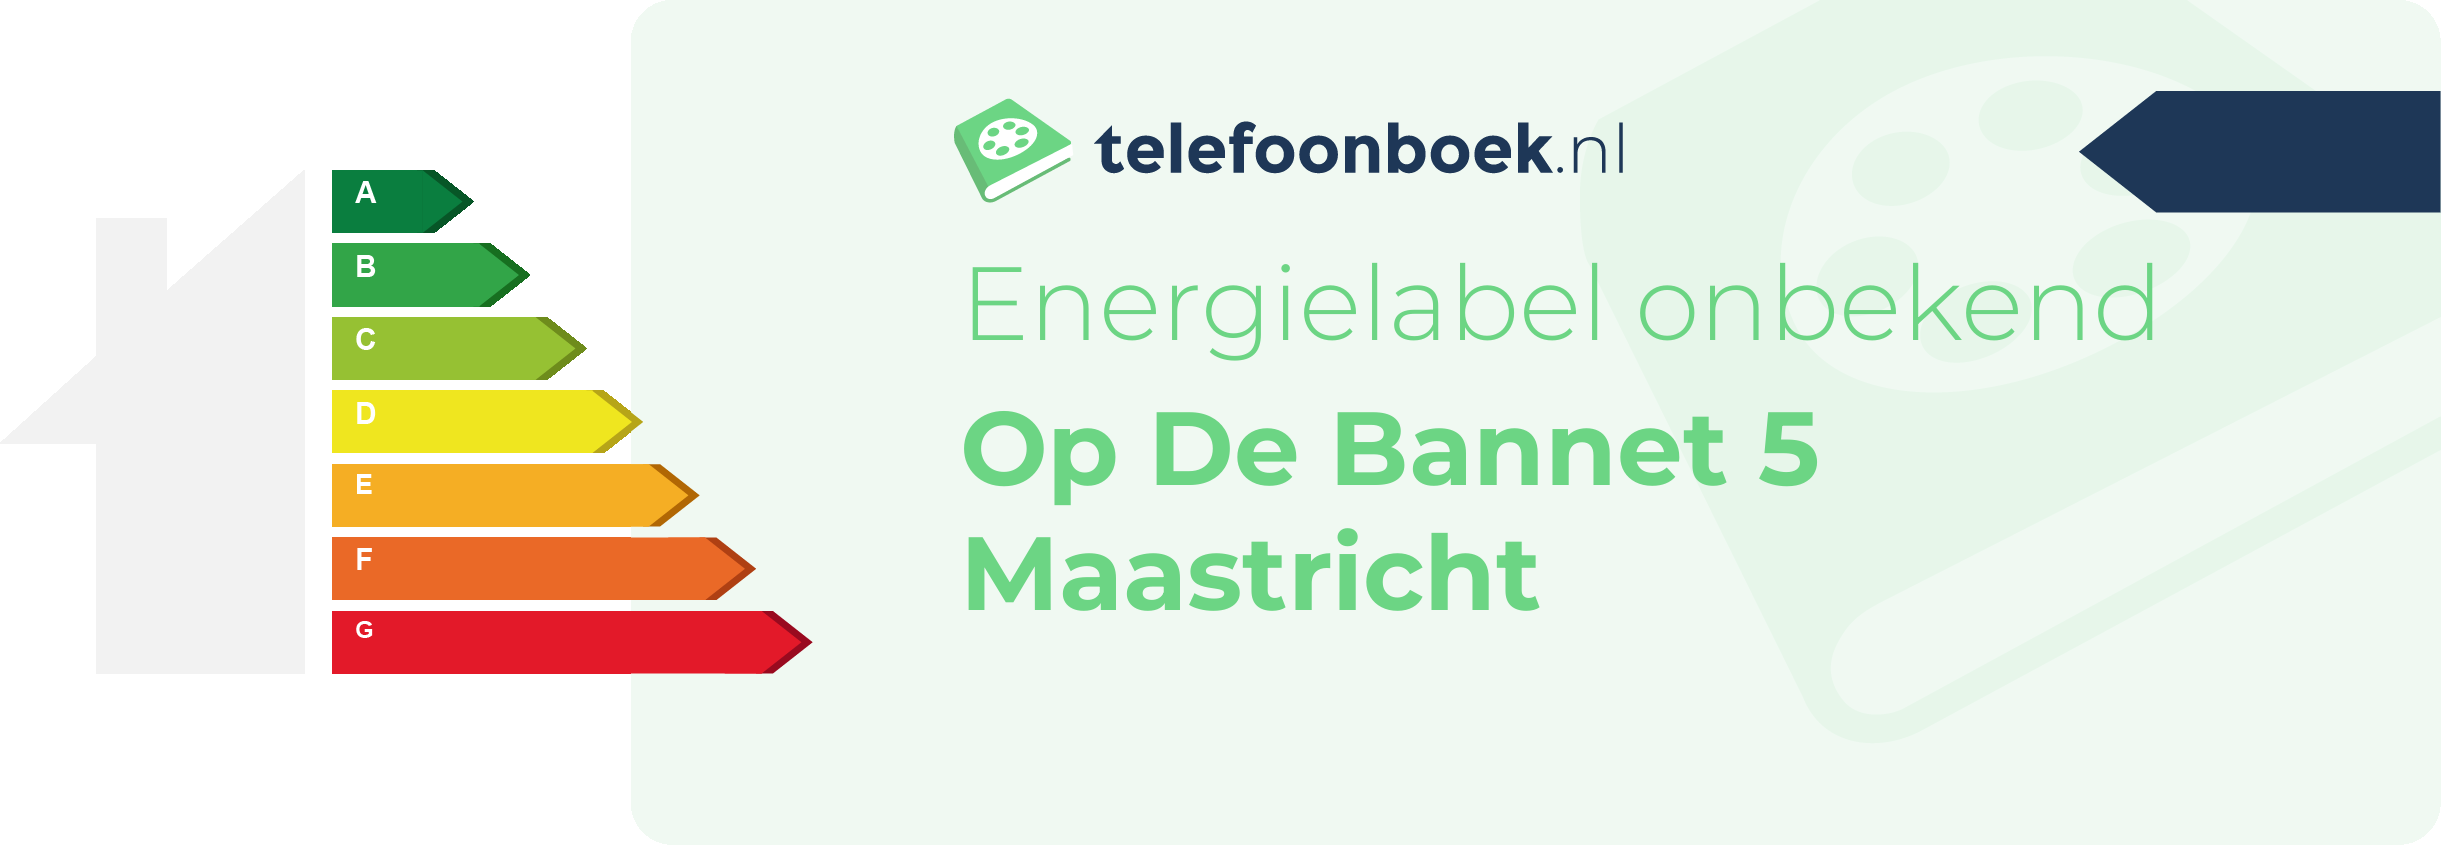 Energielabel Op De Bannet 5 Maastricht